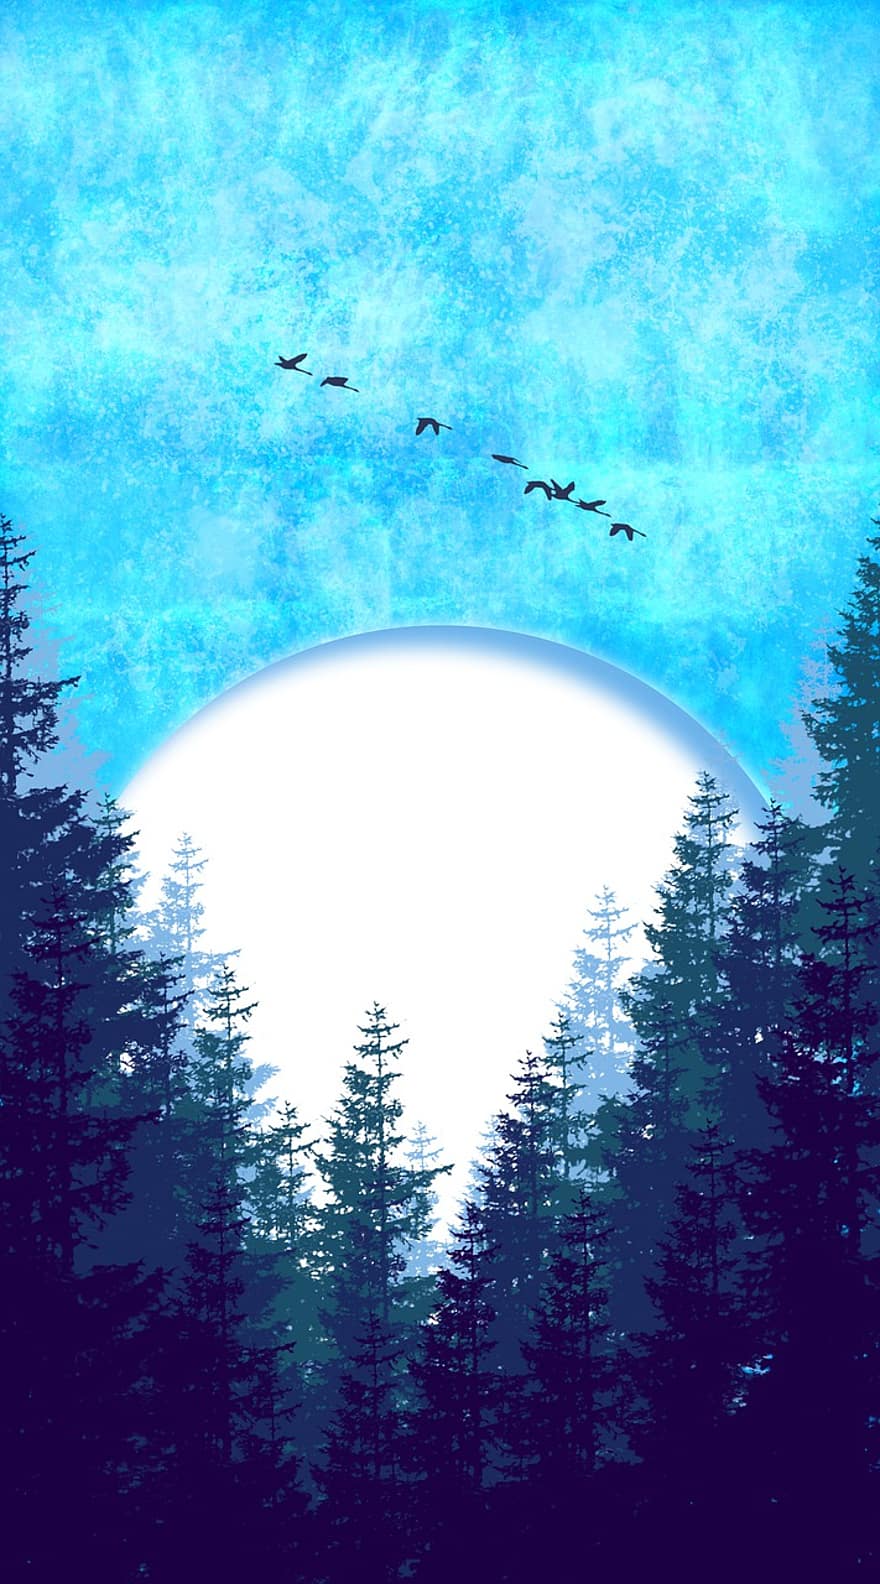 les, měsíc, Příroda, stromy, nebe, měsíční svit, ptáků